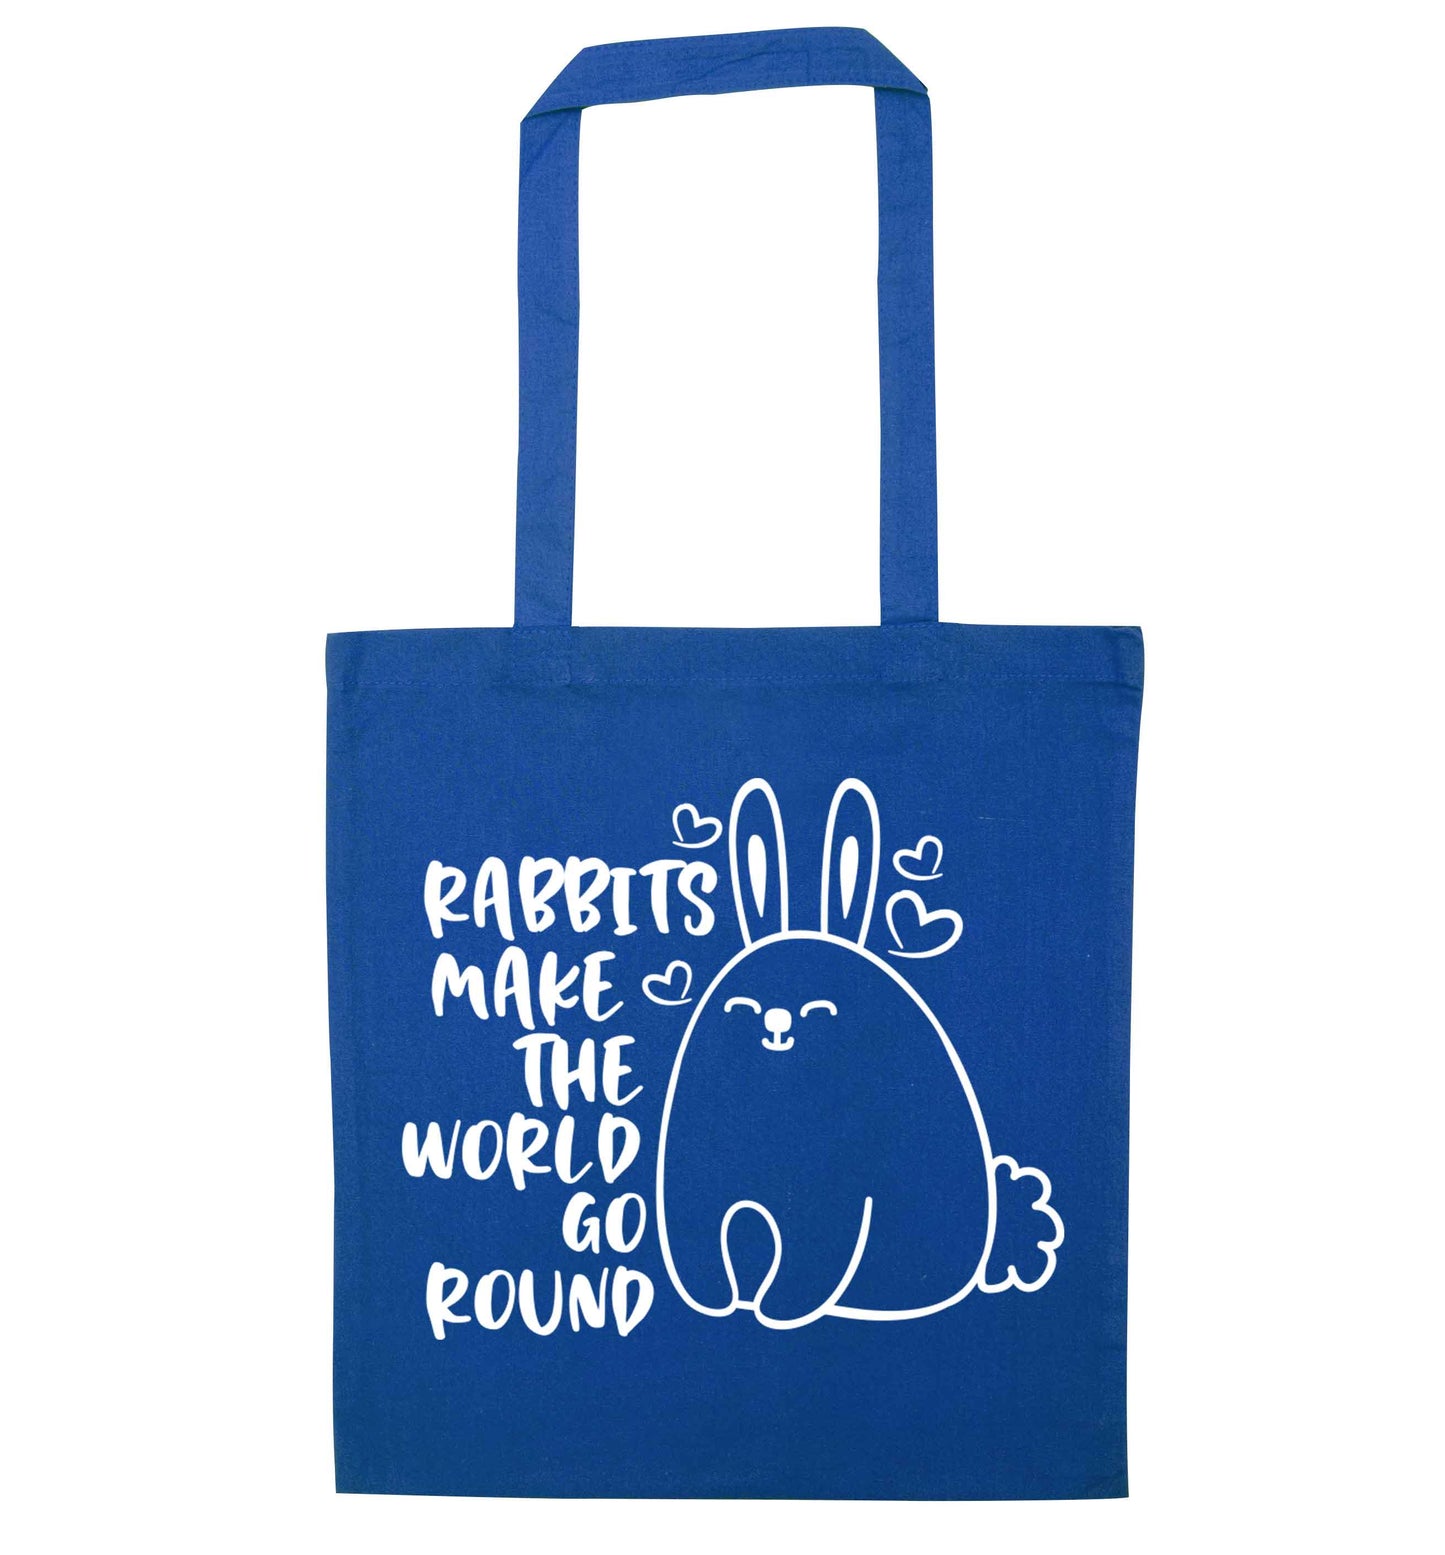 Rabbits make the world go round blue tote bag